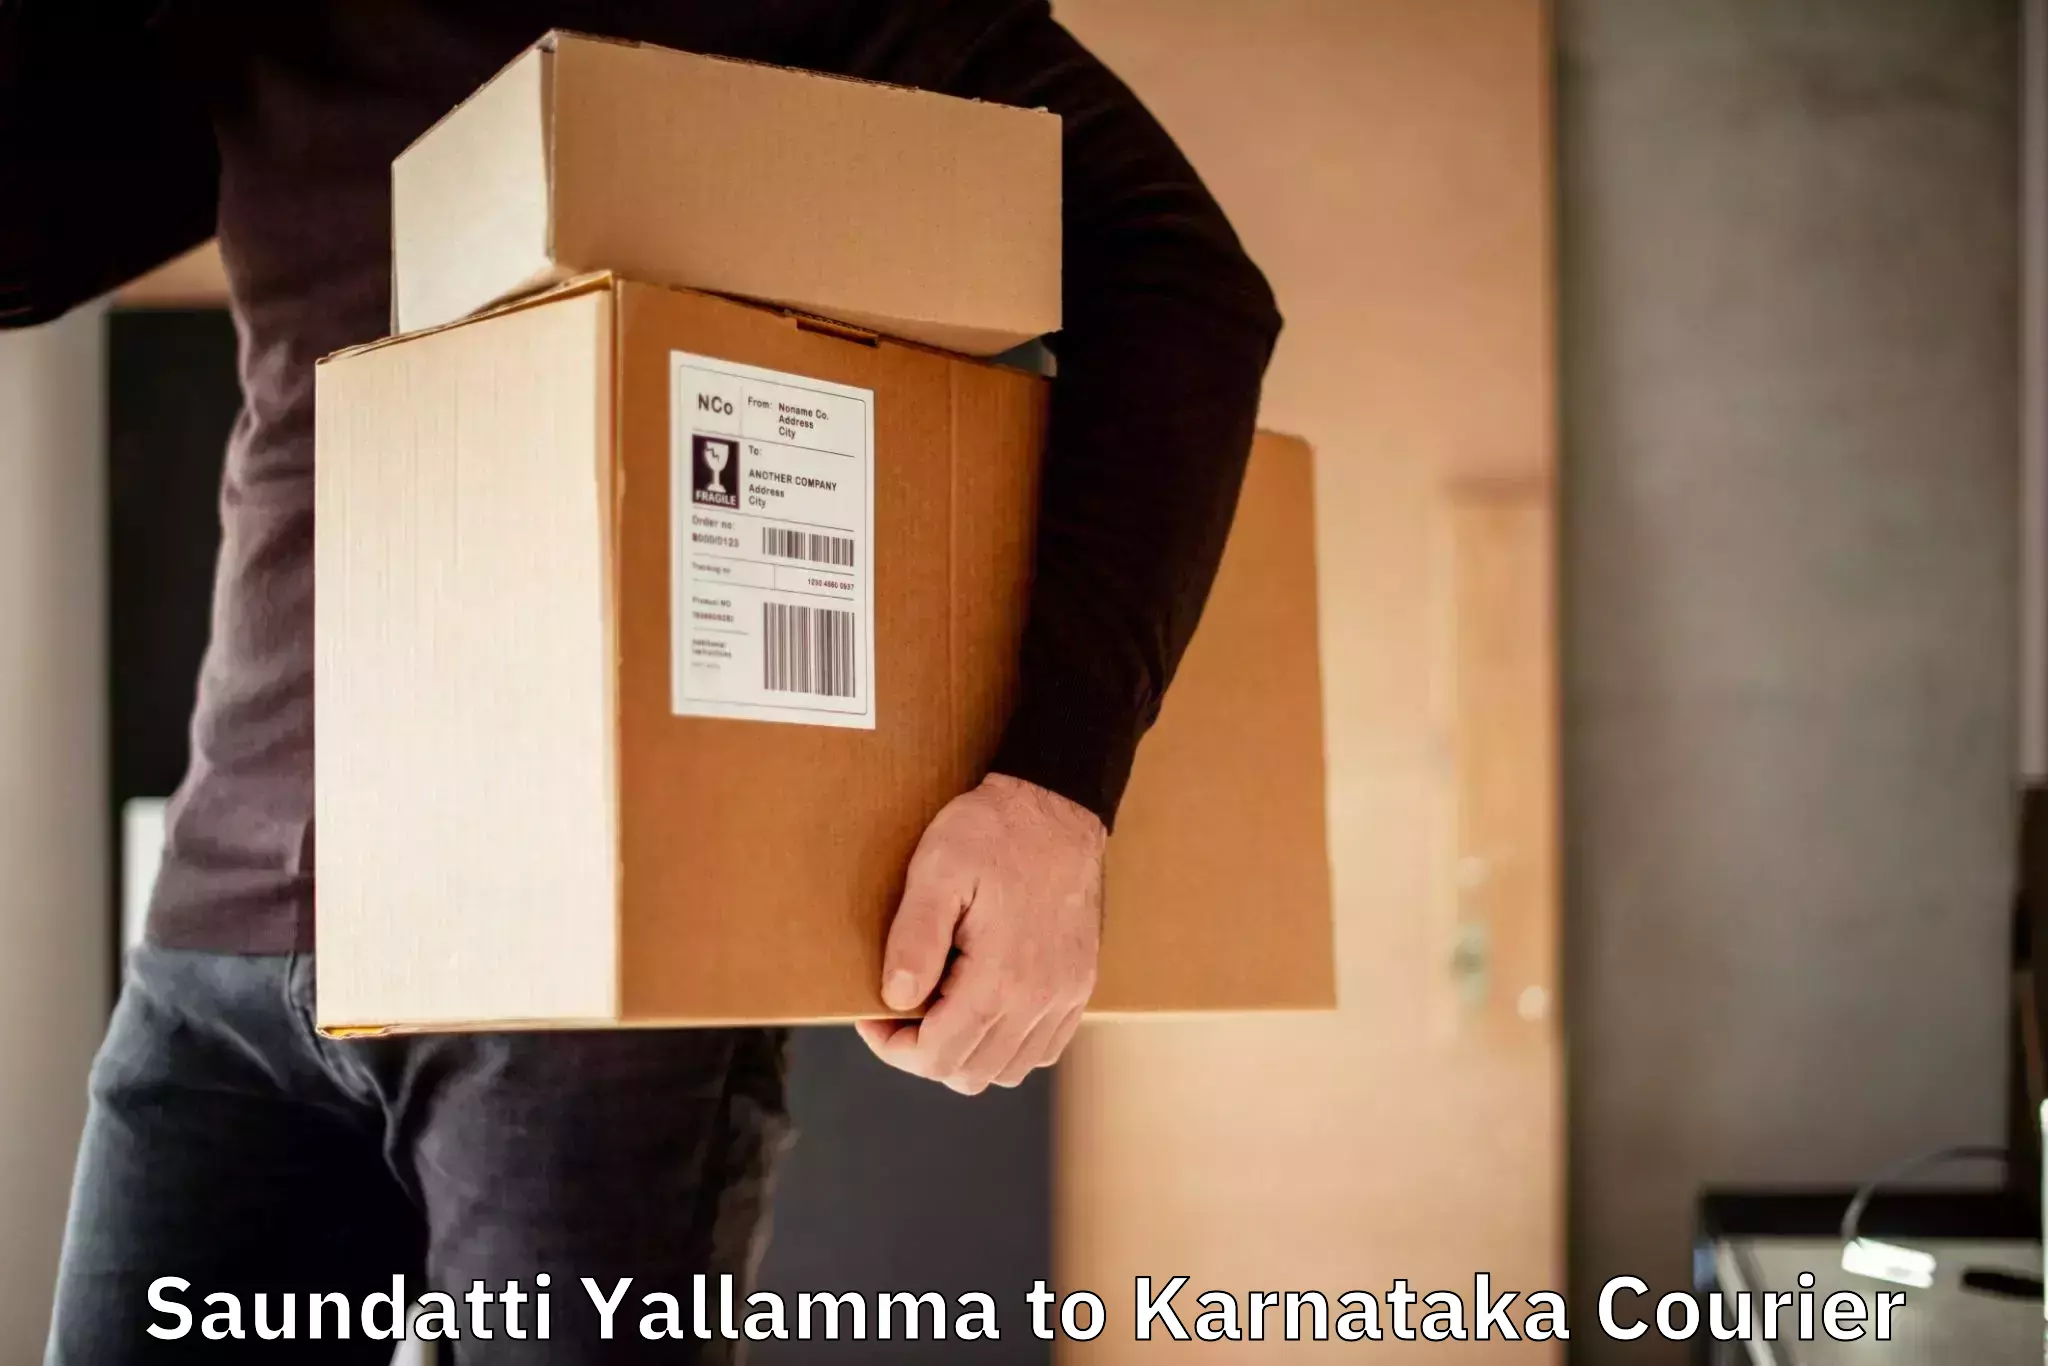 Bulk courier orders Saundatti Yallamma to Karnataka